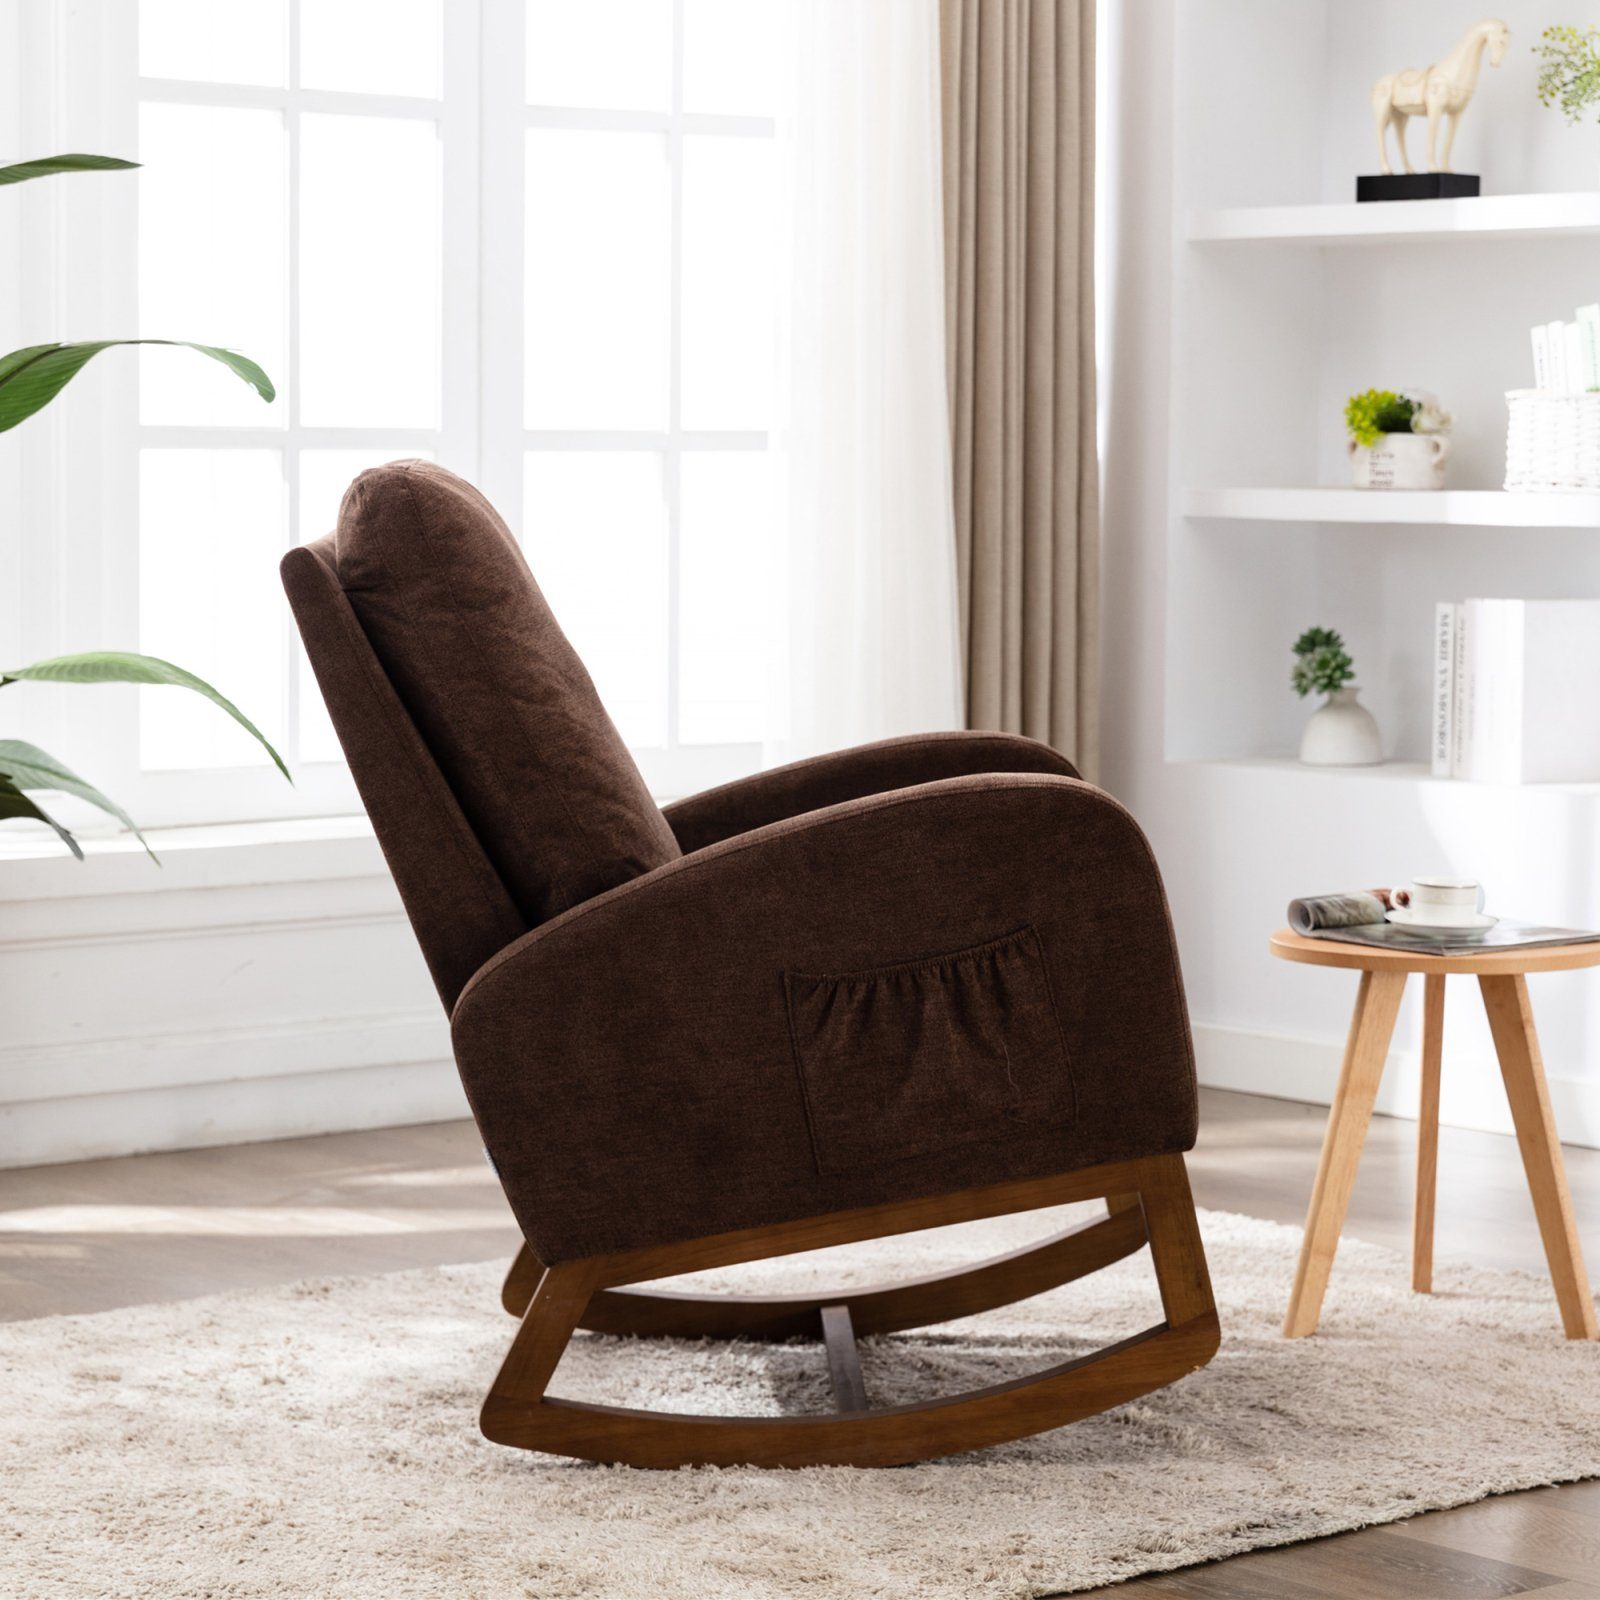 Sitzfläche und für Freizeitstuhl, SEEZSSA Hohe mit Wohnzimmer Rückenlehne Schaukelsessel Kaffee Gepolsterter Schaukelstuhl